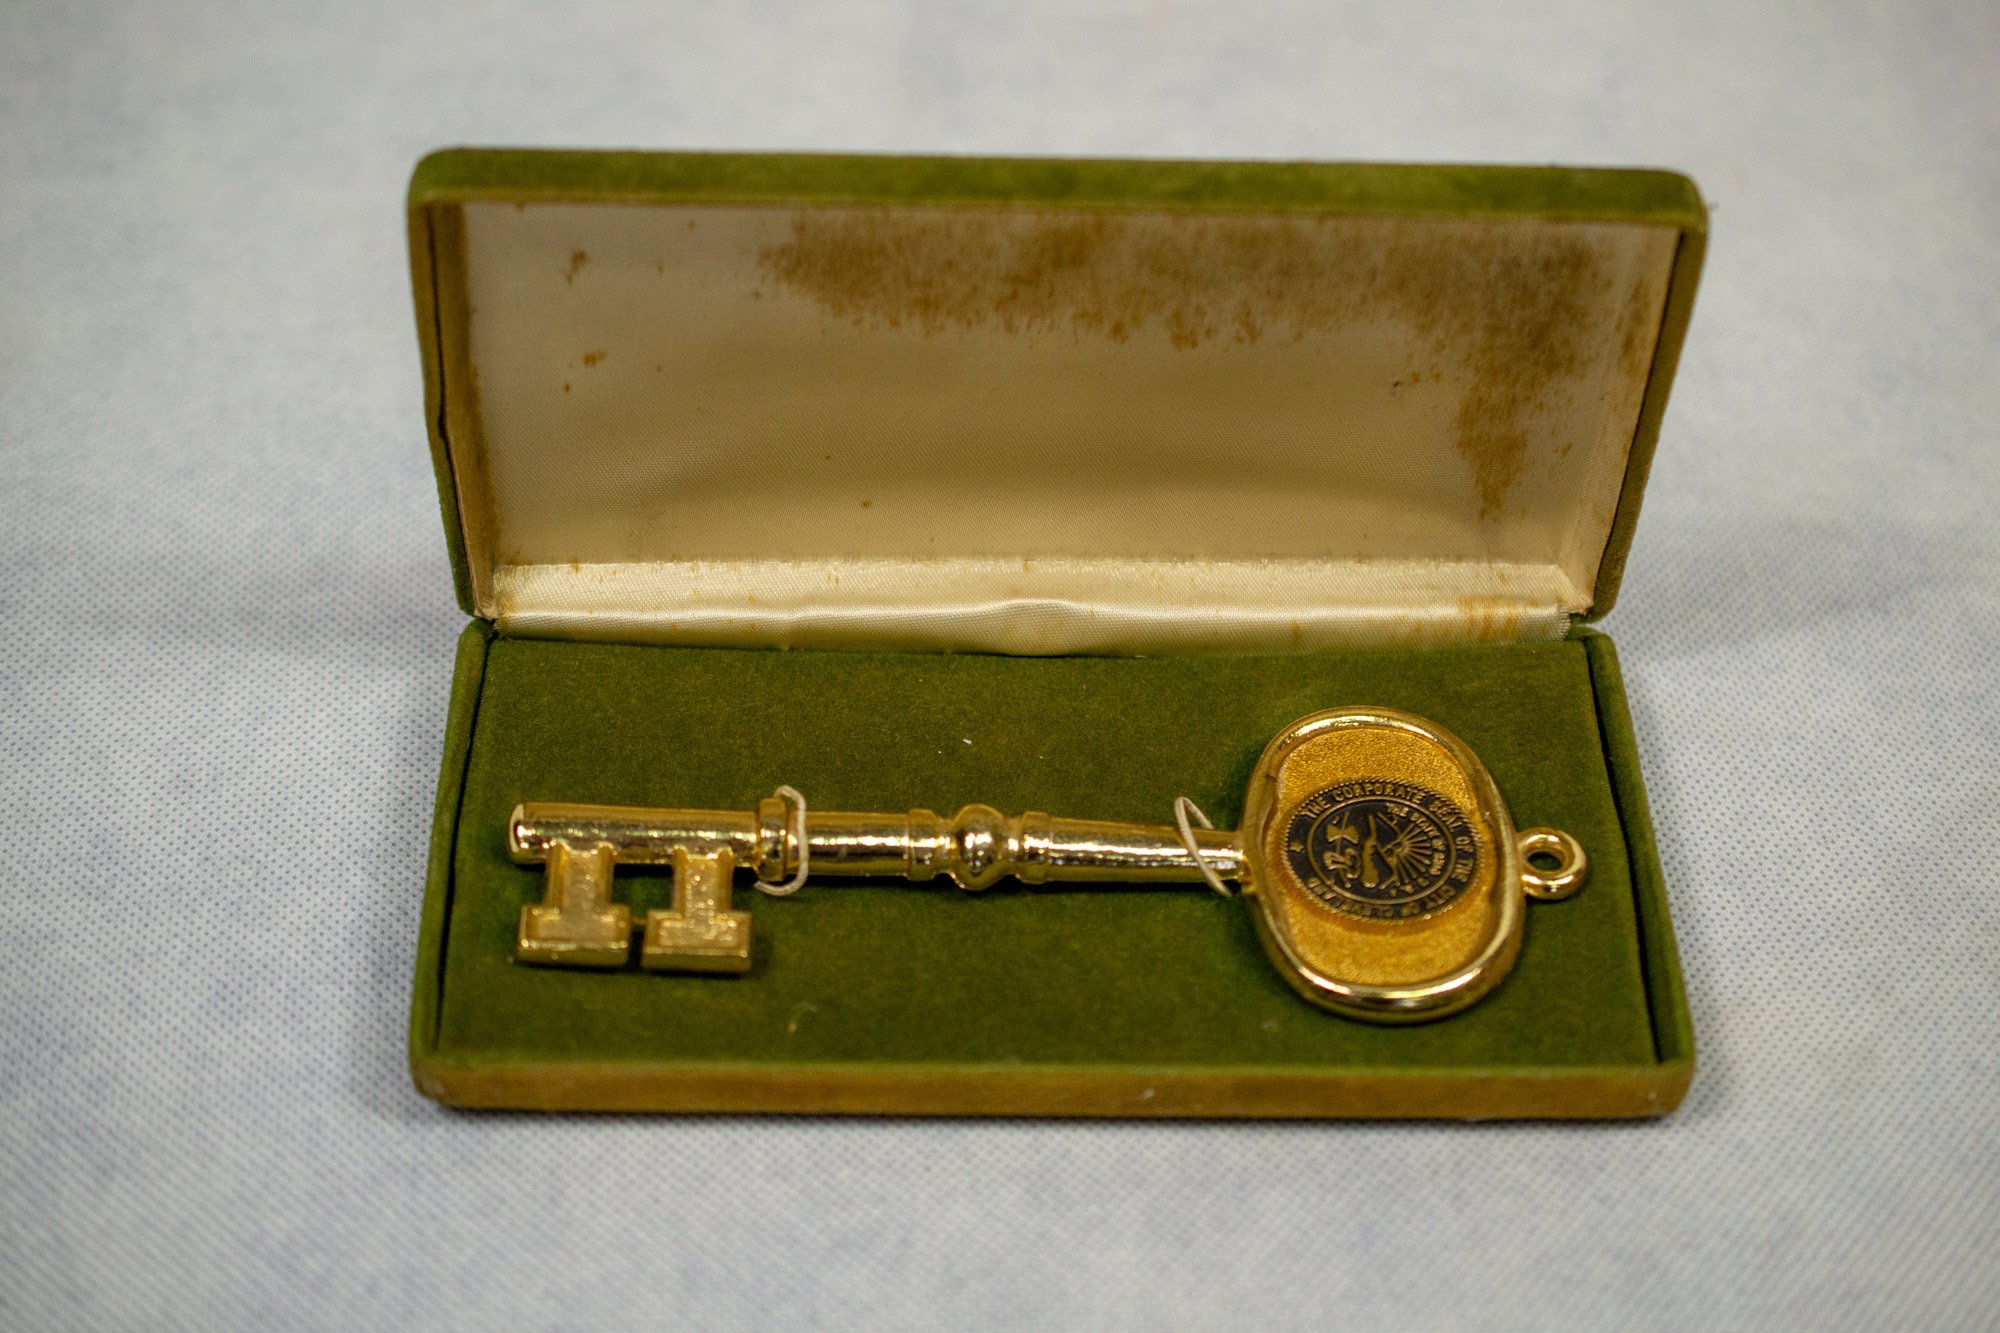 Díszes kulcs (Helytörténeti Gyűjtemény és Ádám Jenő Emlékház, Szigetszentmiklós CC BY-NC-SA)